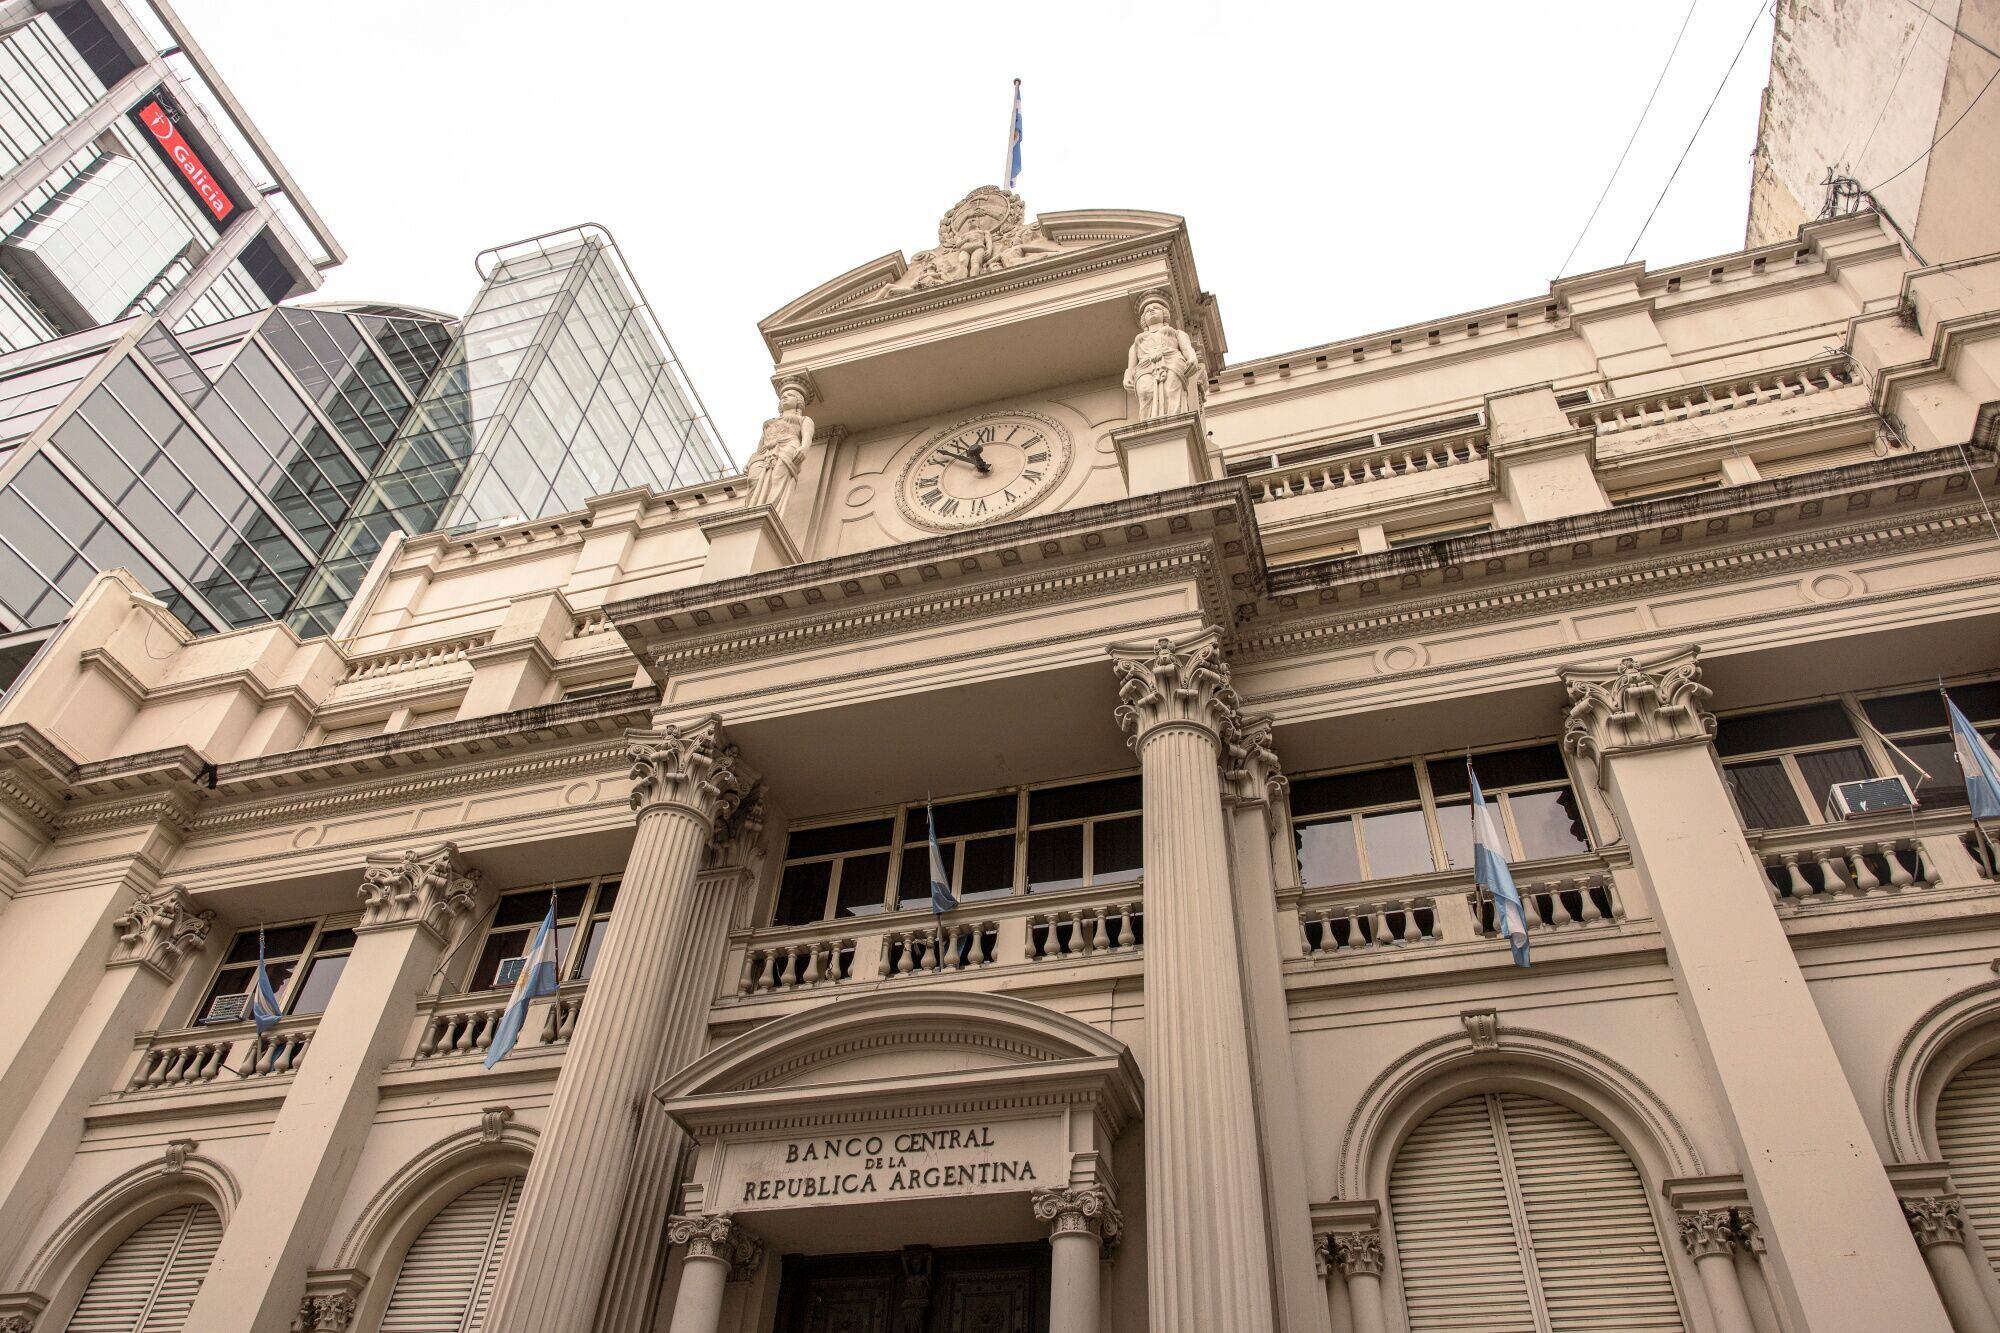 El Banco Central de la República Argentina en Buenos Aires.